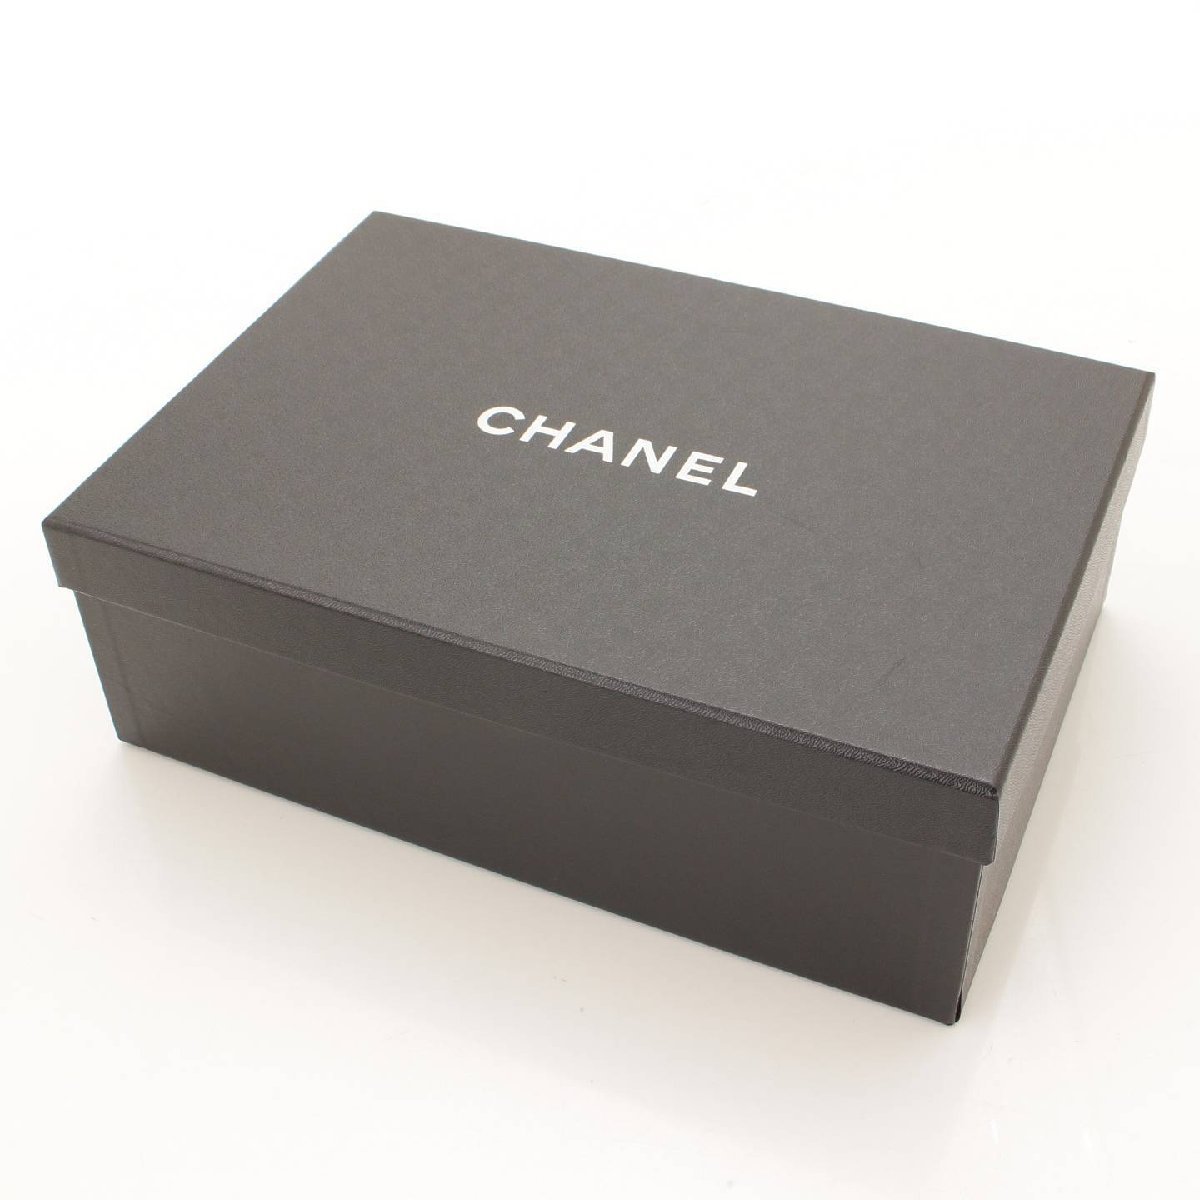 【シャネル】Chanel ココマーク マトラッセ サンダル ミュール G38555 ピンク 36C 【正規品保証】160365